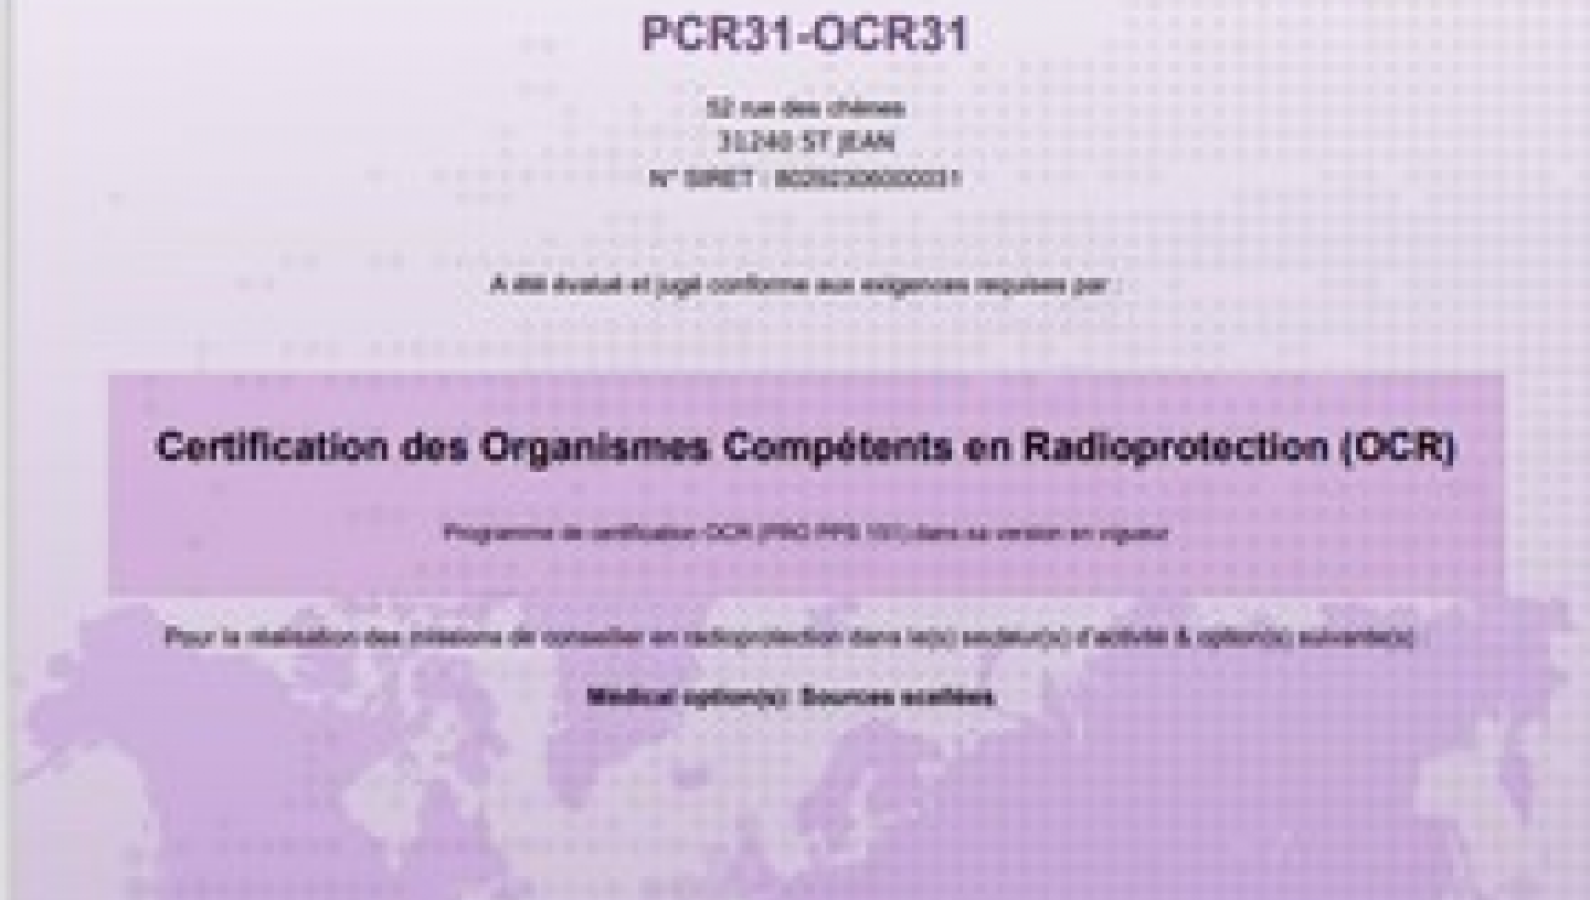 PCR31-OCR31 est certifié Organisme Compétent en Radioprotection